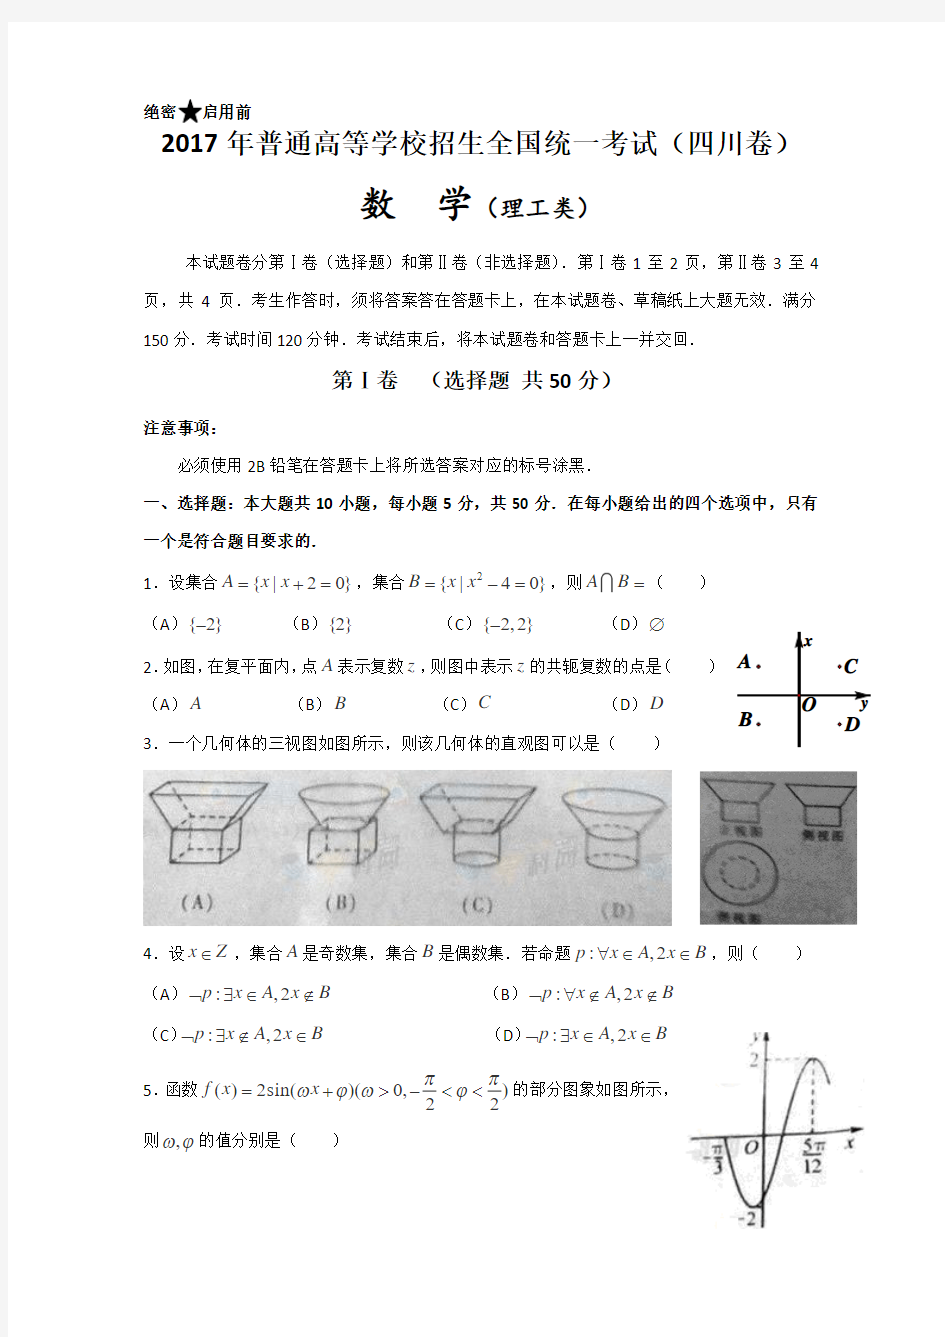 2017年高考真题——理科数学(四川卷)解析版